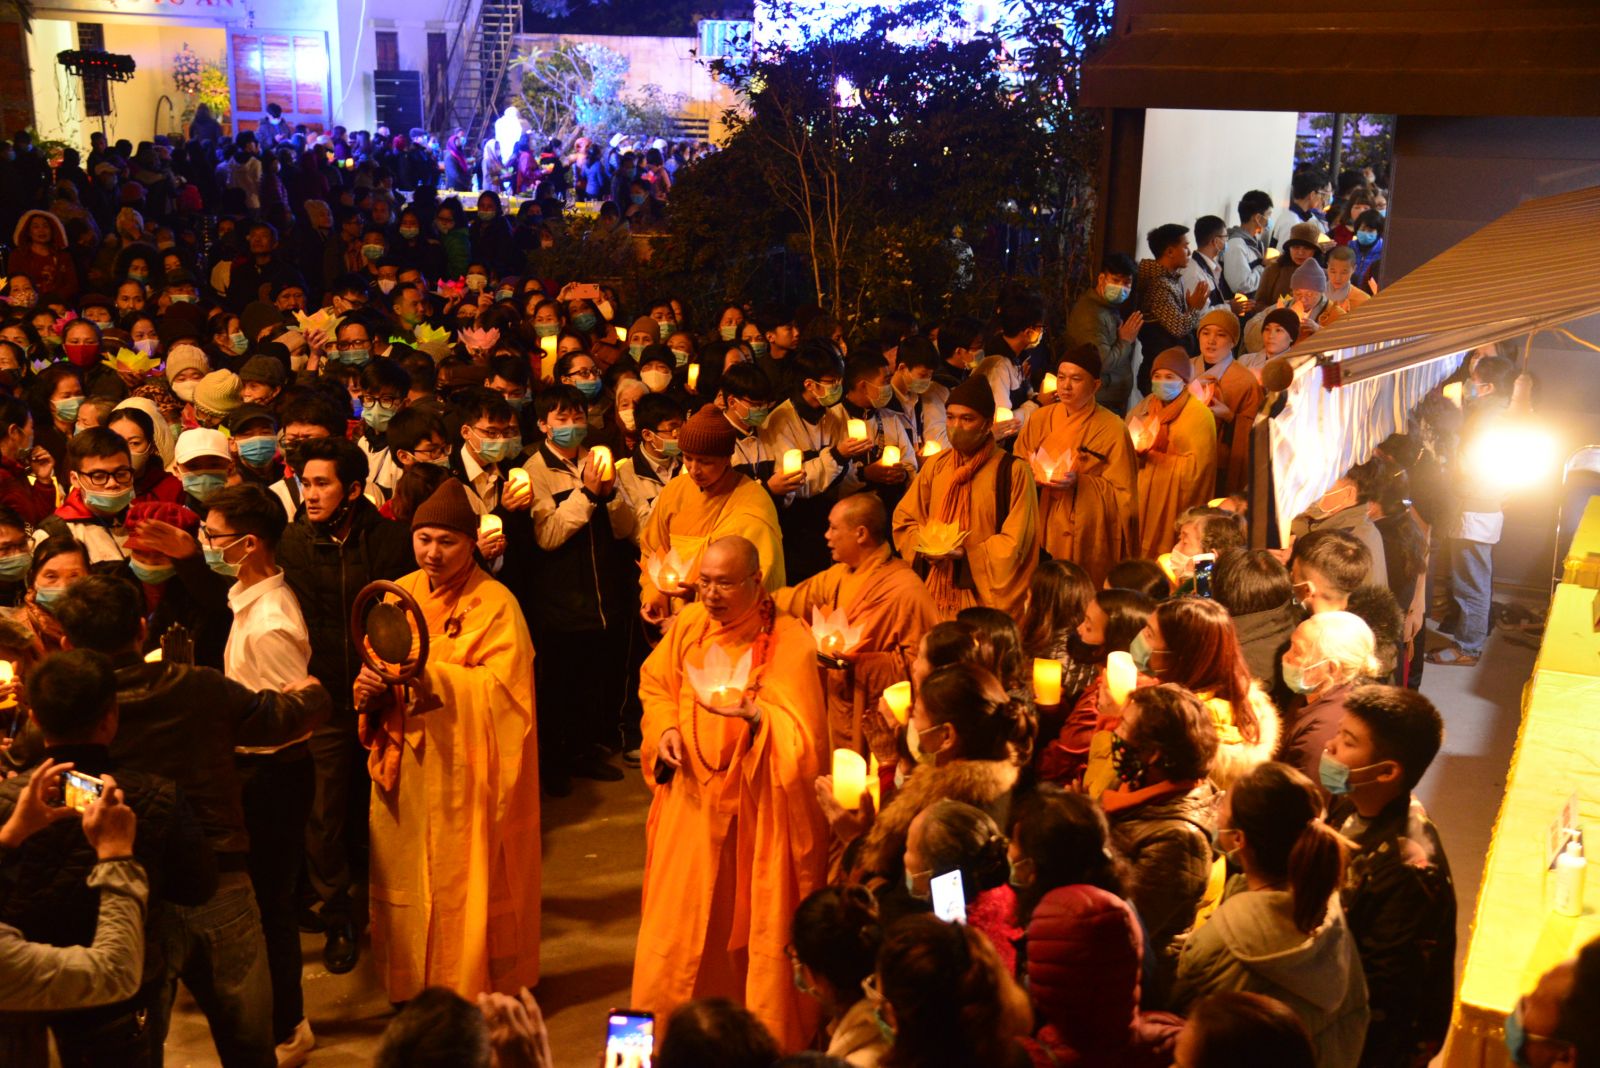 Hải Phòng: Lễ khánh thành Gác chuông và khai Đại Hồng Chung chùa Hưng Long
